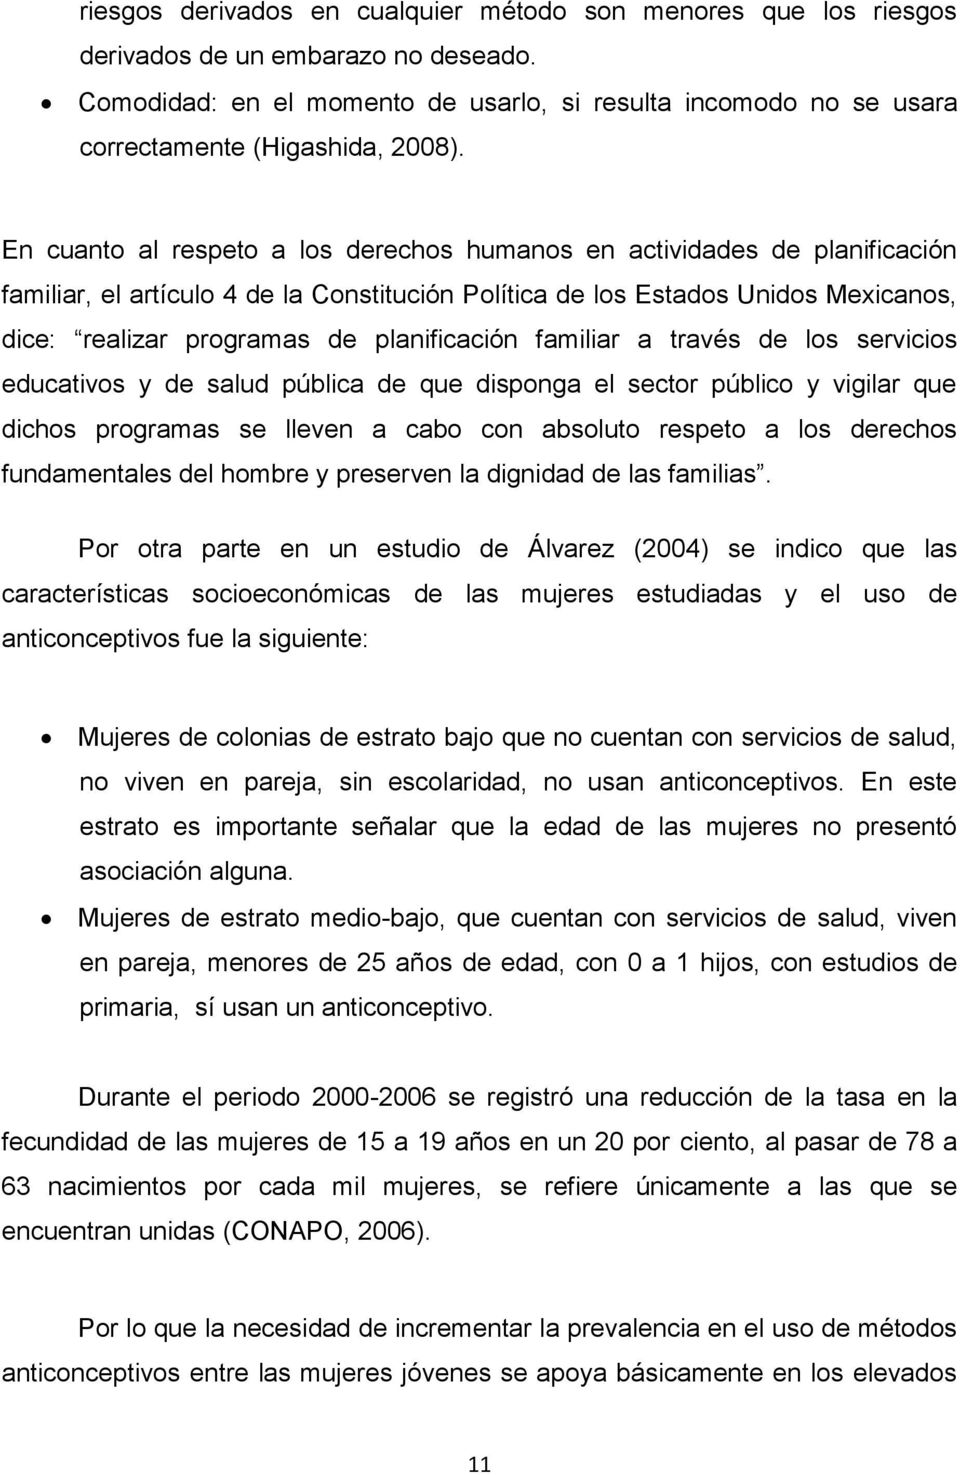 En cuanto al respeto a los derechos humanos en actividades de planificación familiar, el artículo 4 de la Constitución Política de los Estados Unidos Mexicanos, dice: realizar programas de